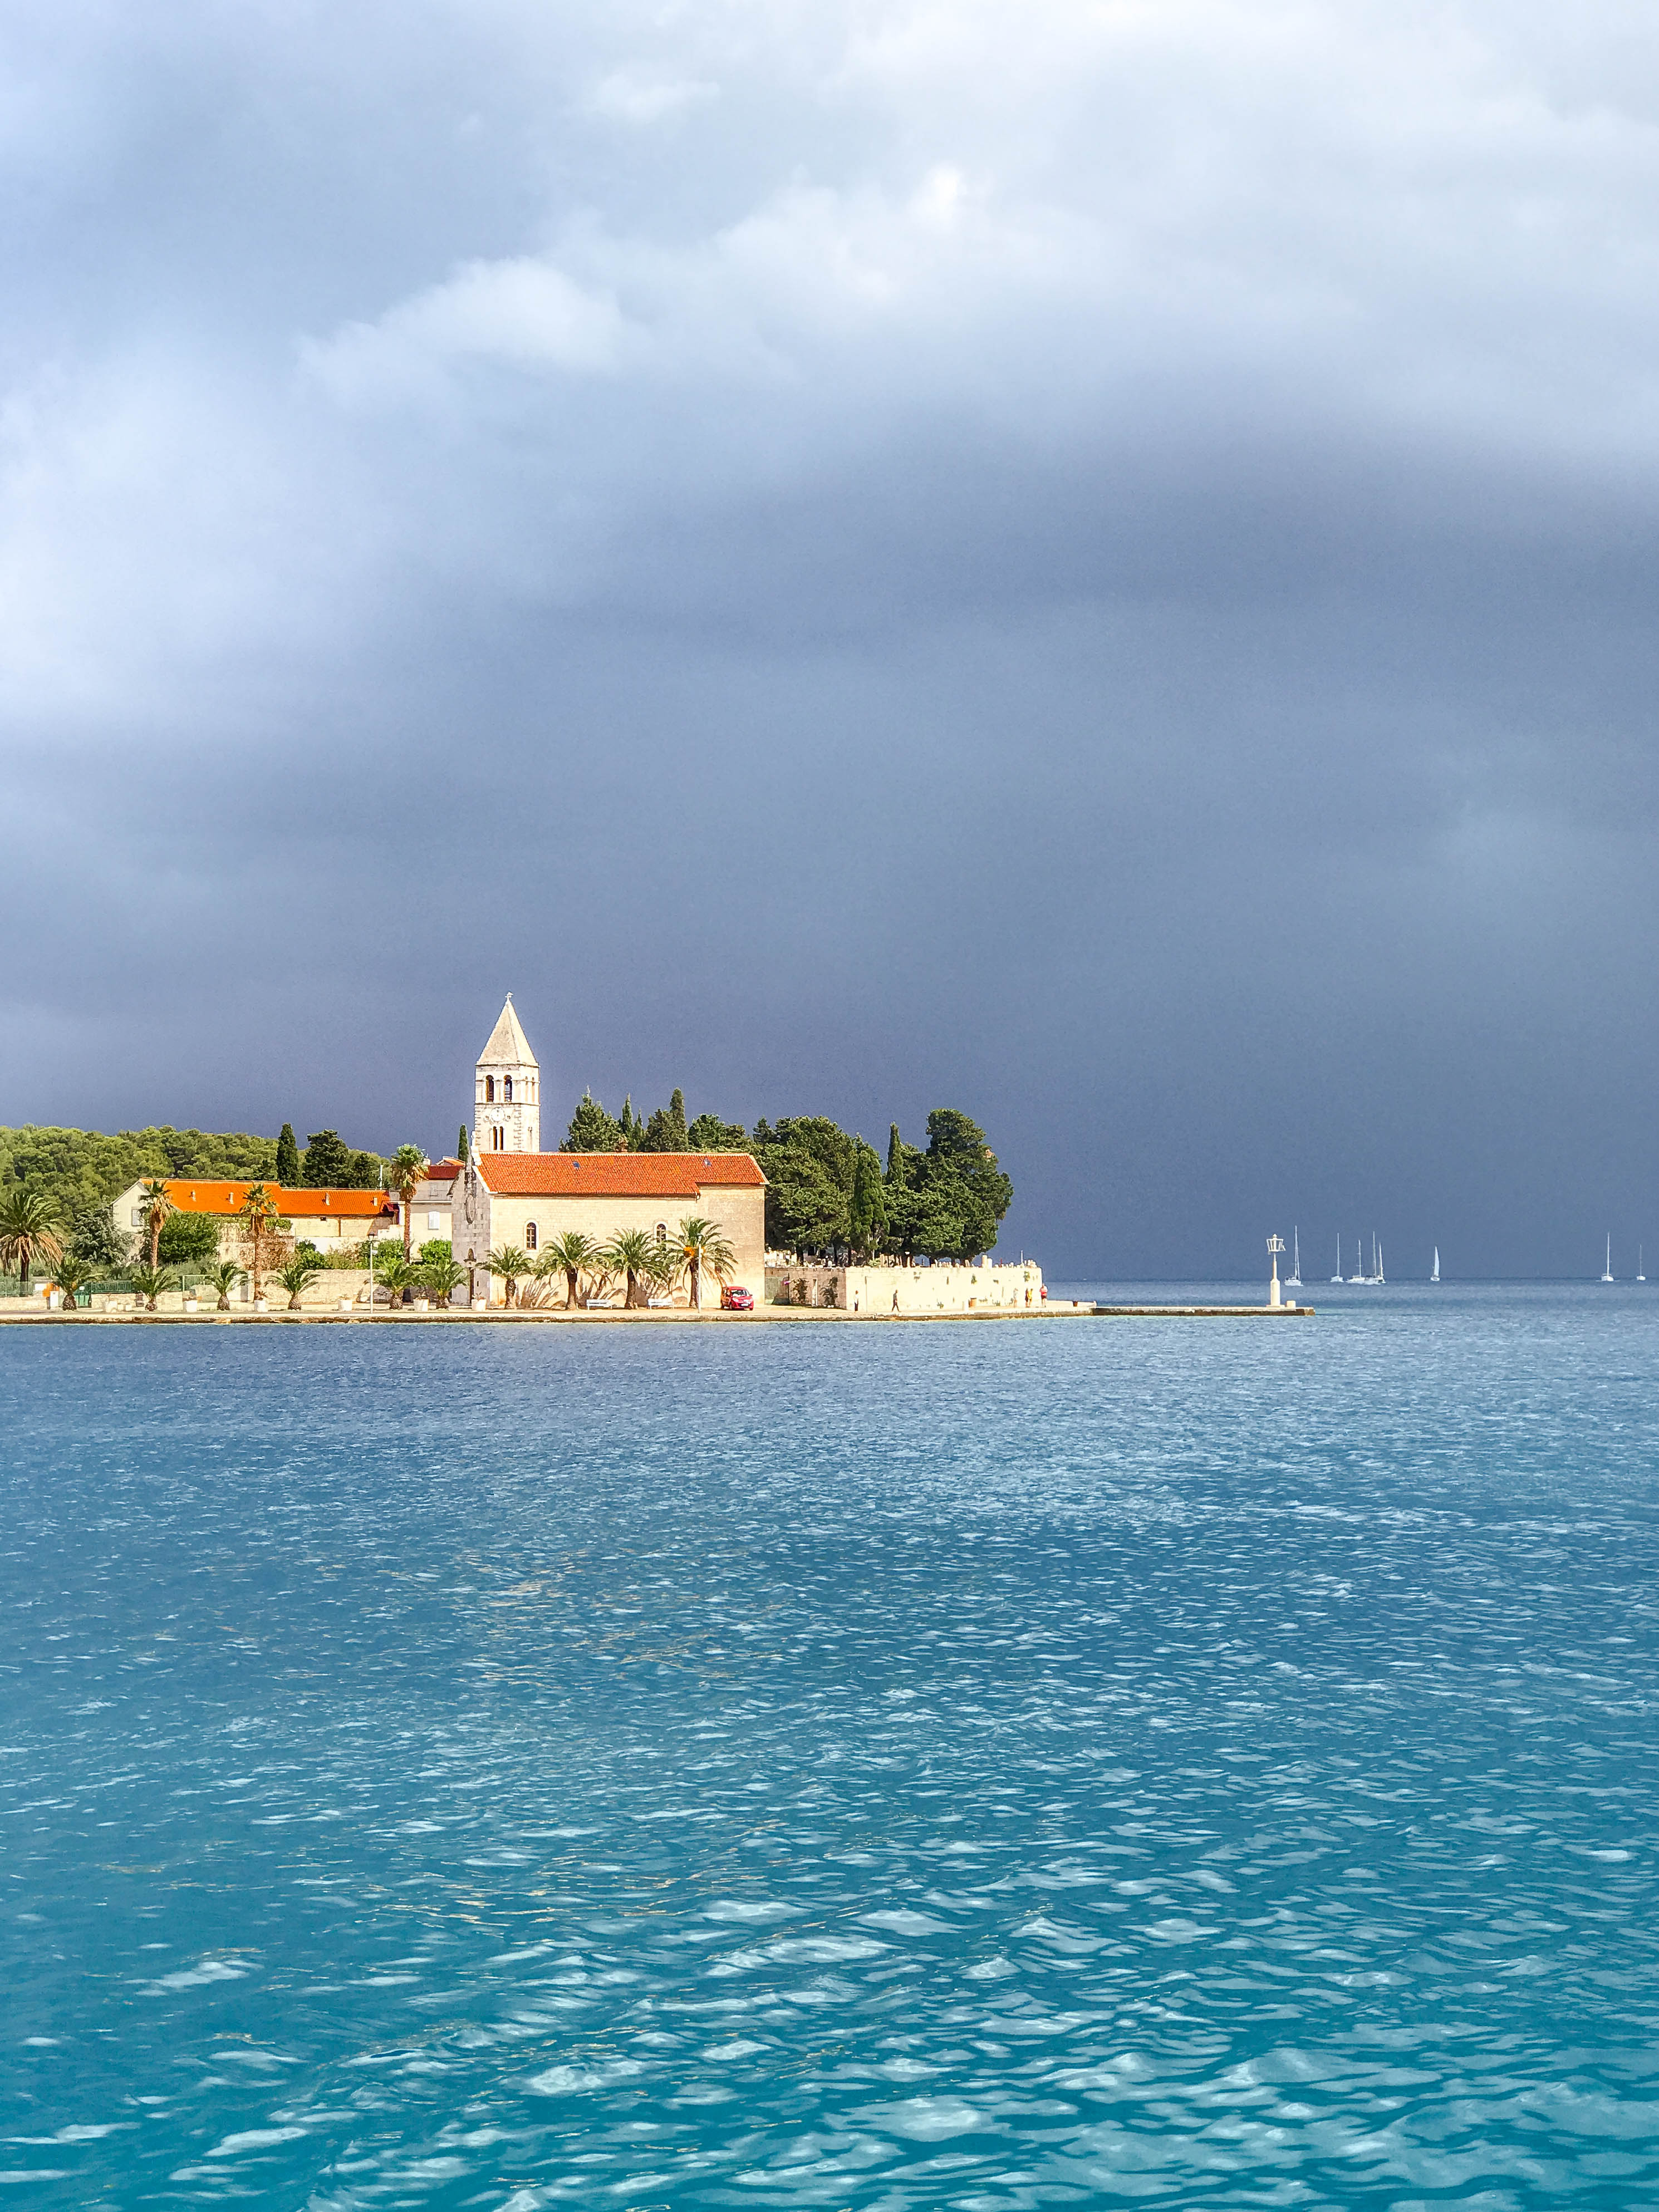 Vis! Our Favorite Island on Croatia's Dalmatian Coast